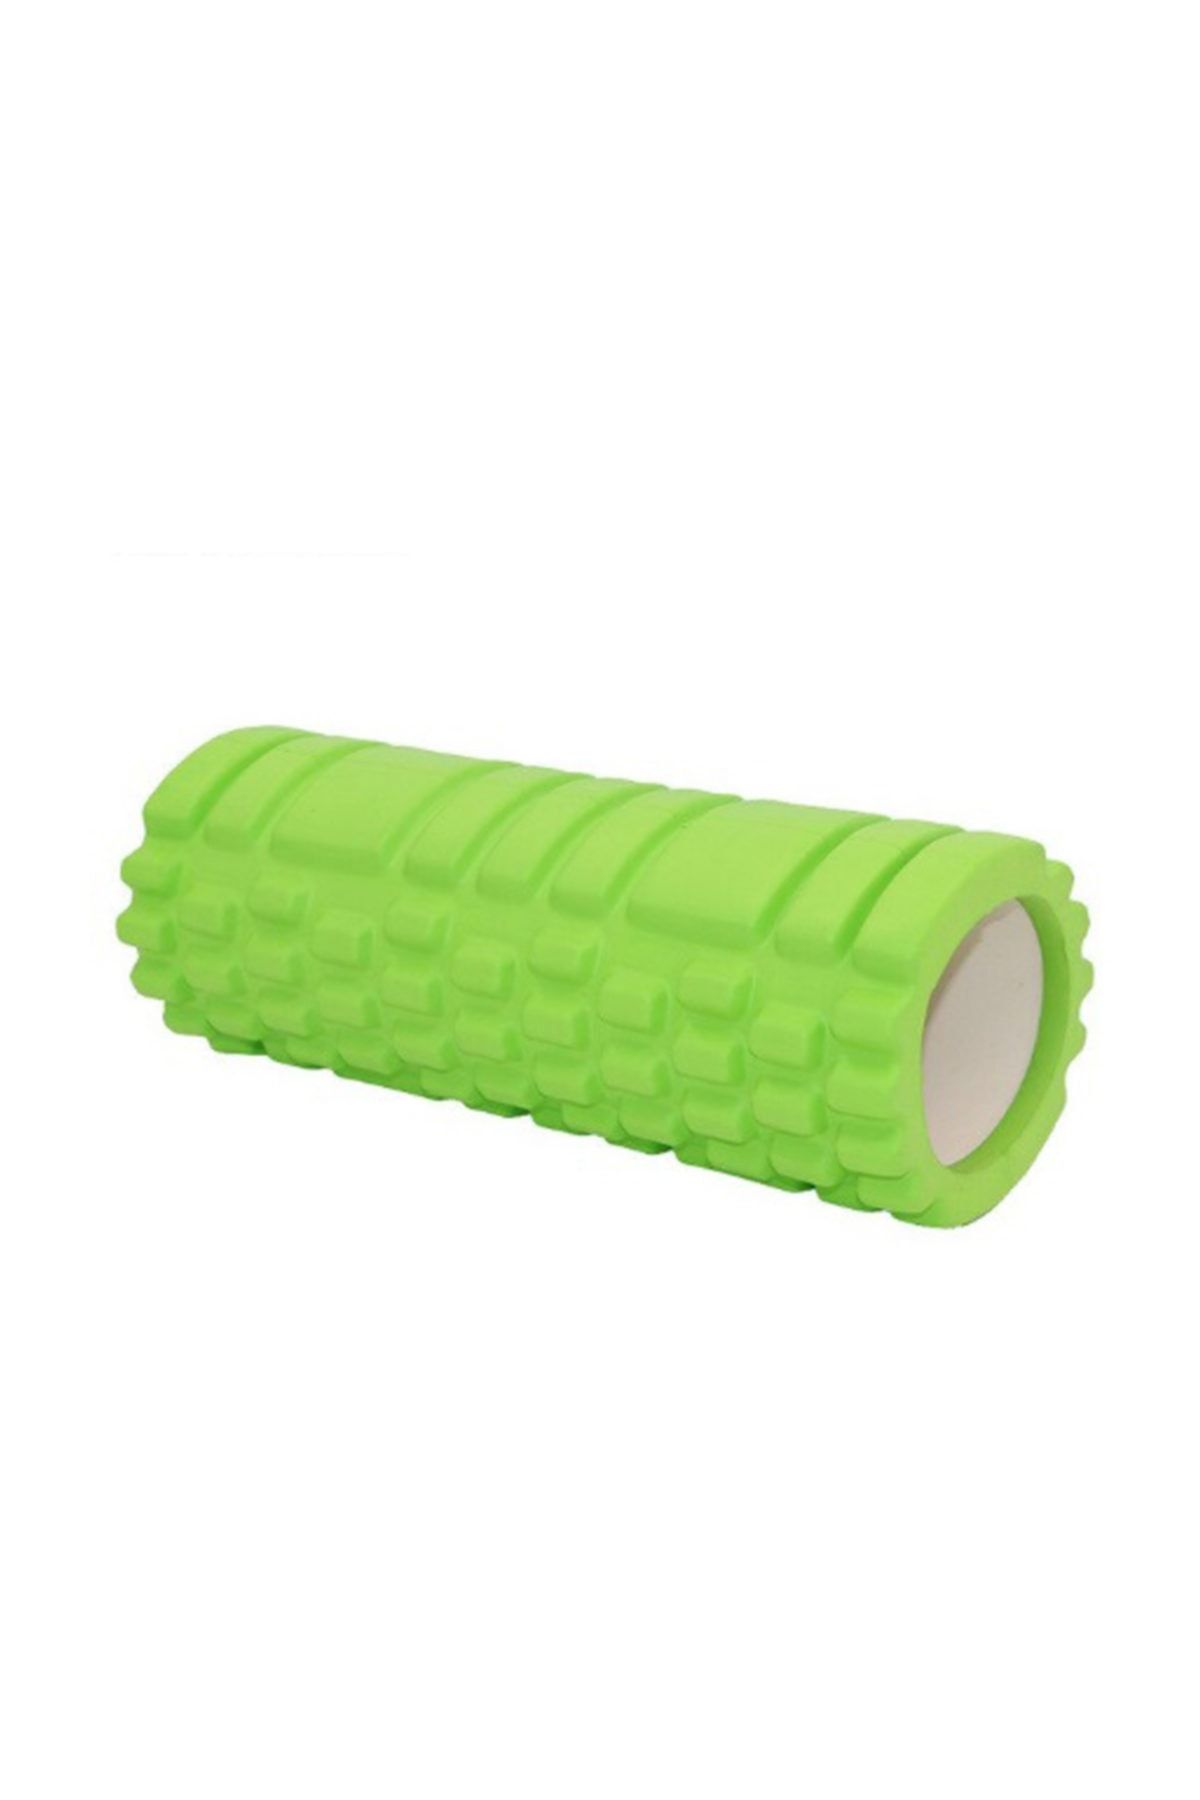 Genel Markalar Foam Roller Masaj Köpüğü Köpük Rulo Yuvarlama Köpüğü - Yeşil